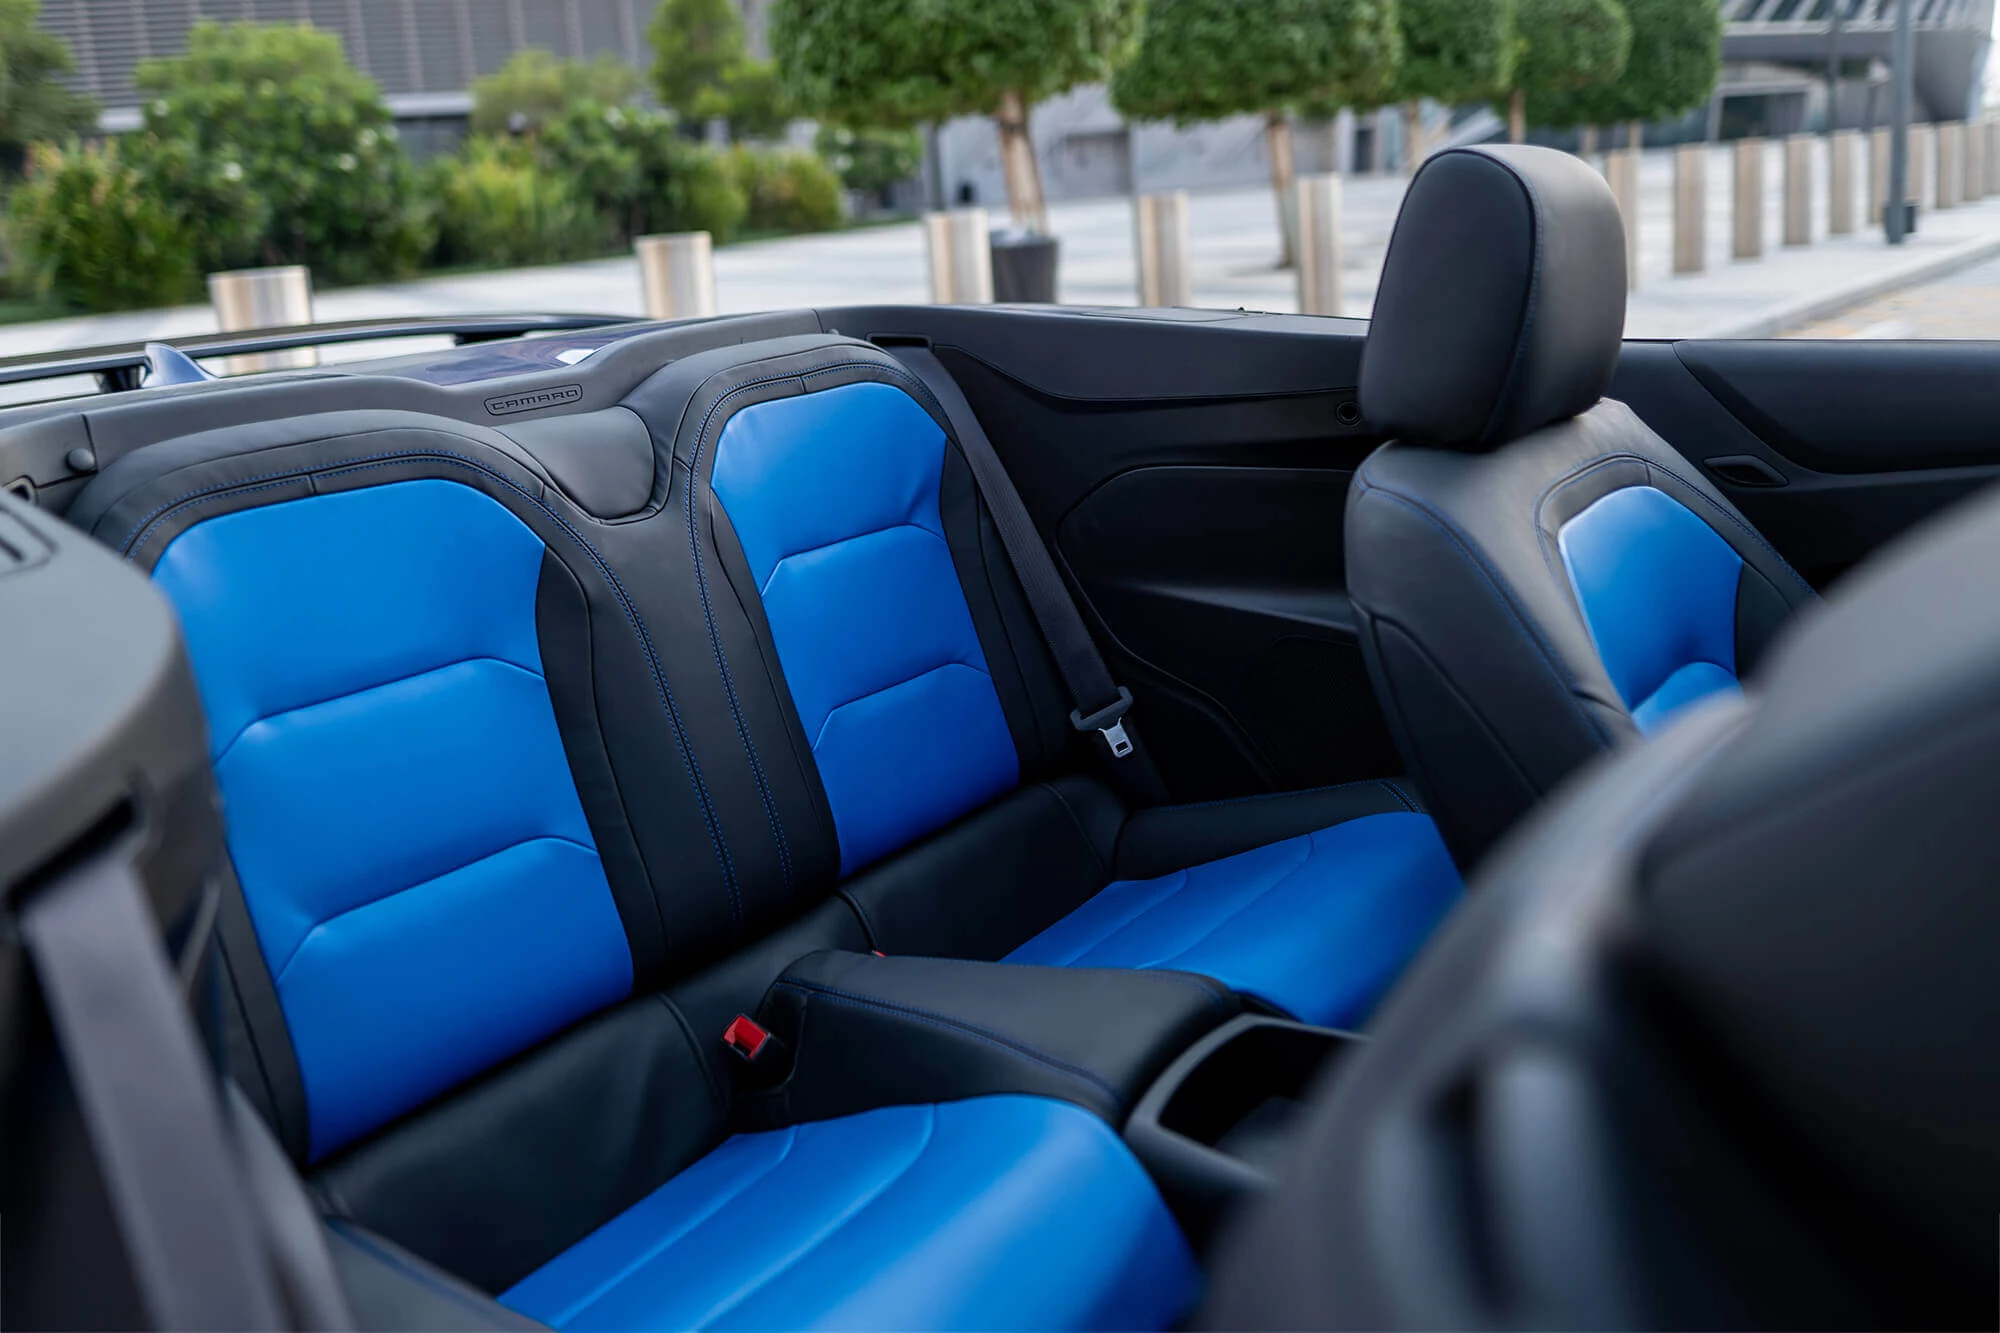 Chevrolet Camaro Convertible Azul